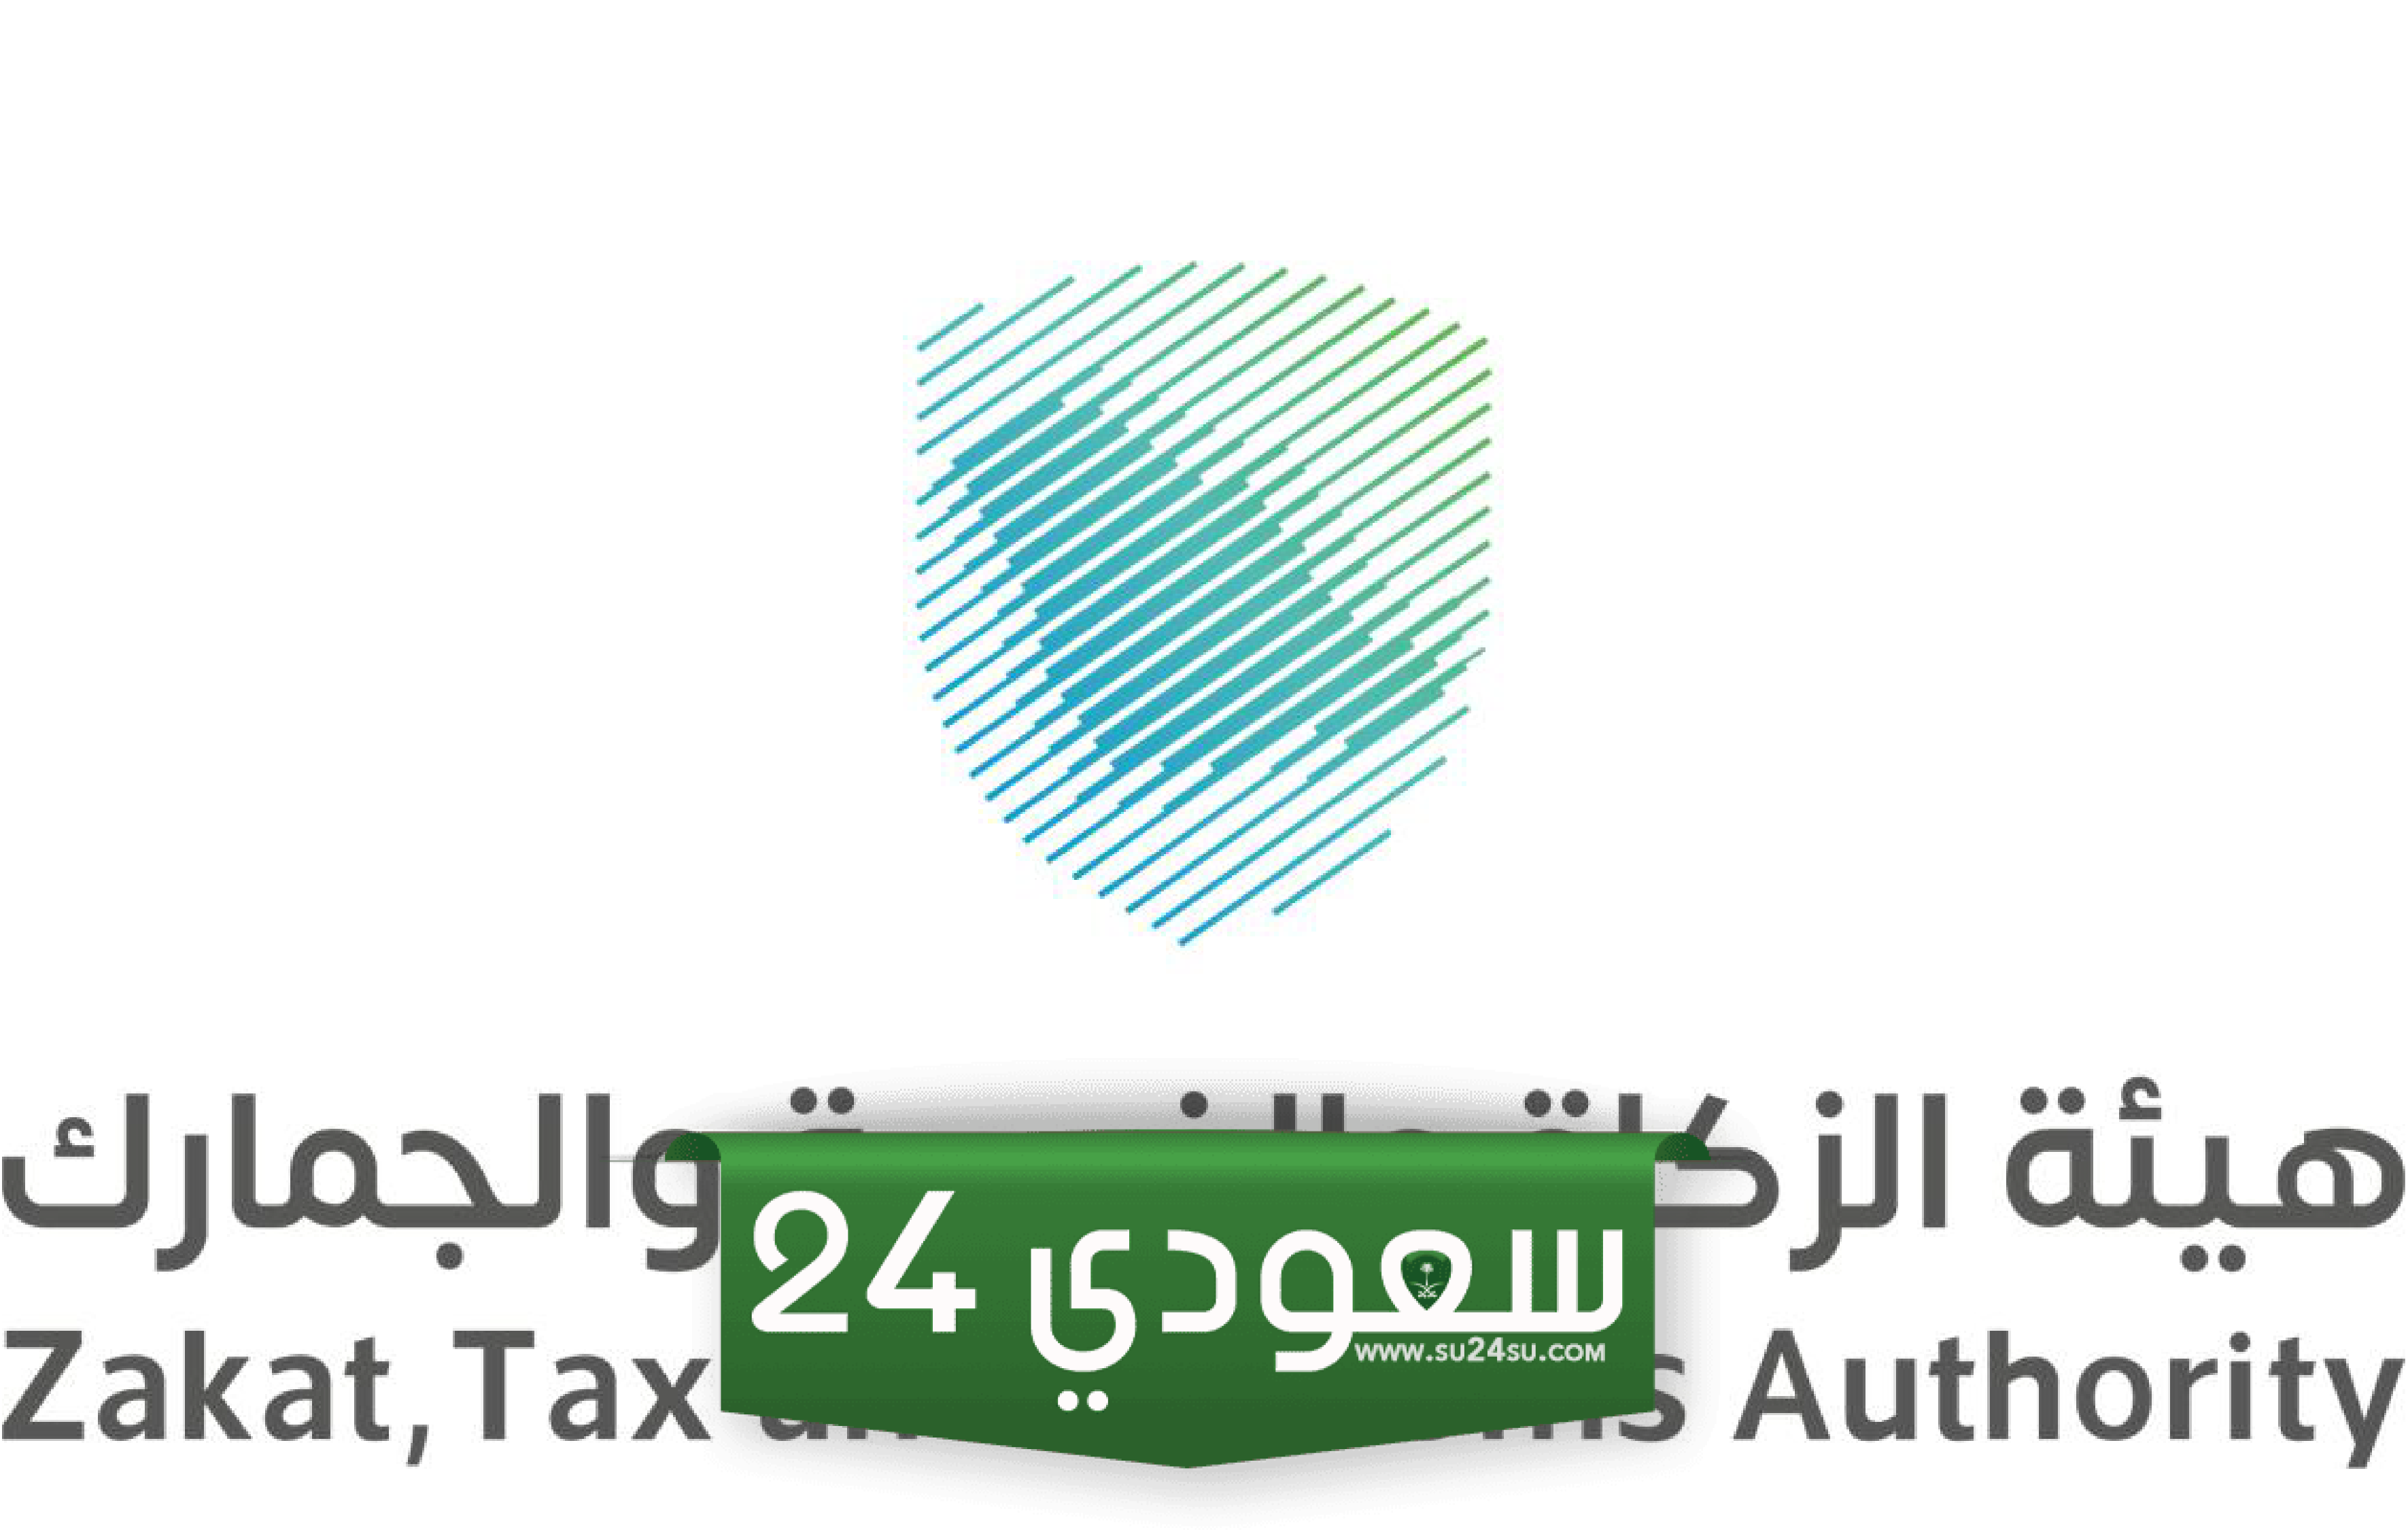 معلومات عن الرقم الضريبي في السعودية